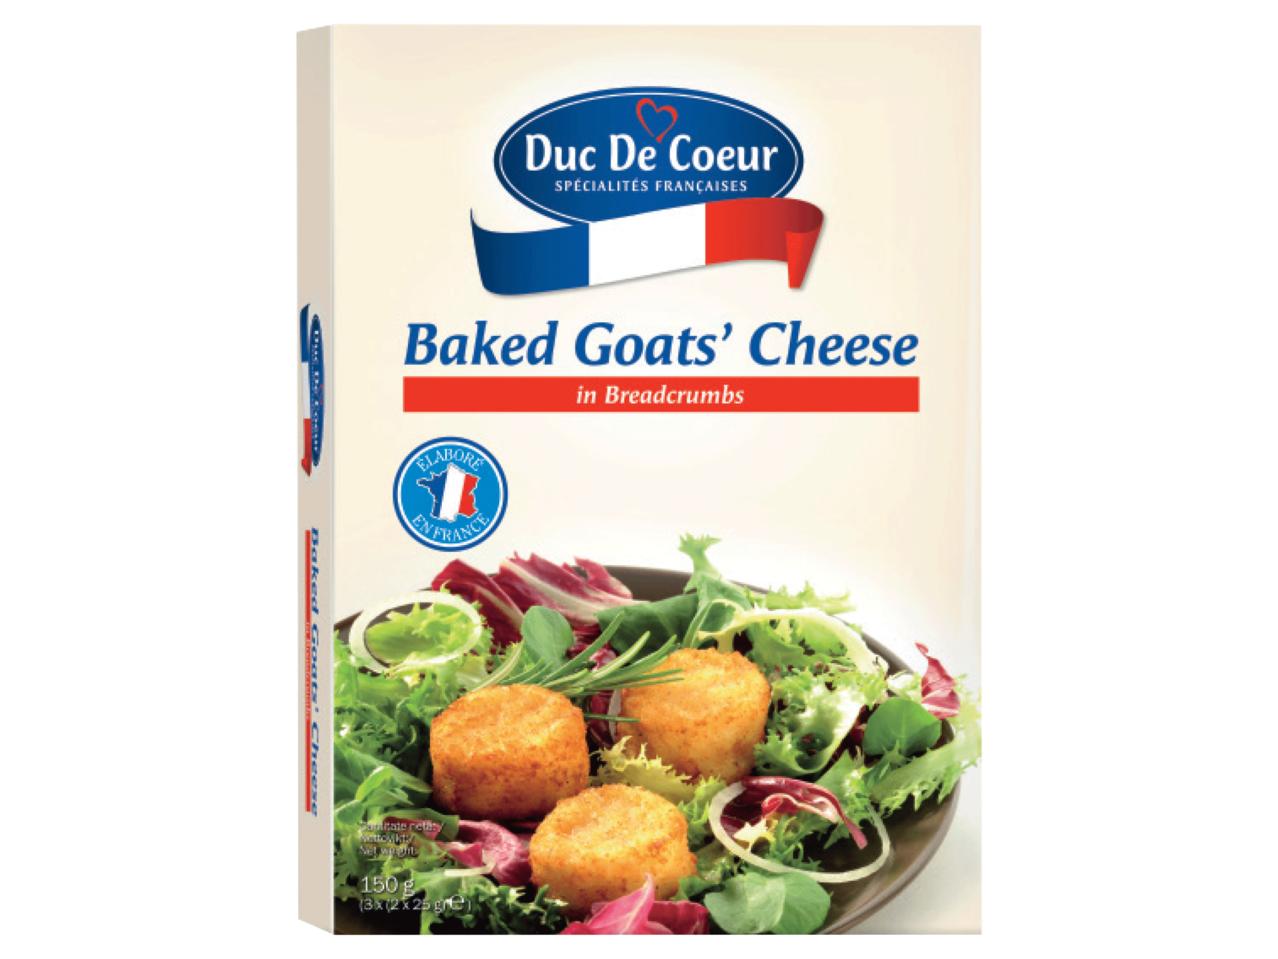 DUC DE COEUR(R) Baked Goat's Cheese in Breadcrumbs